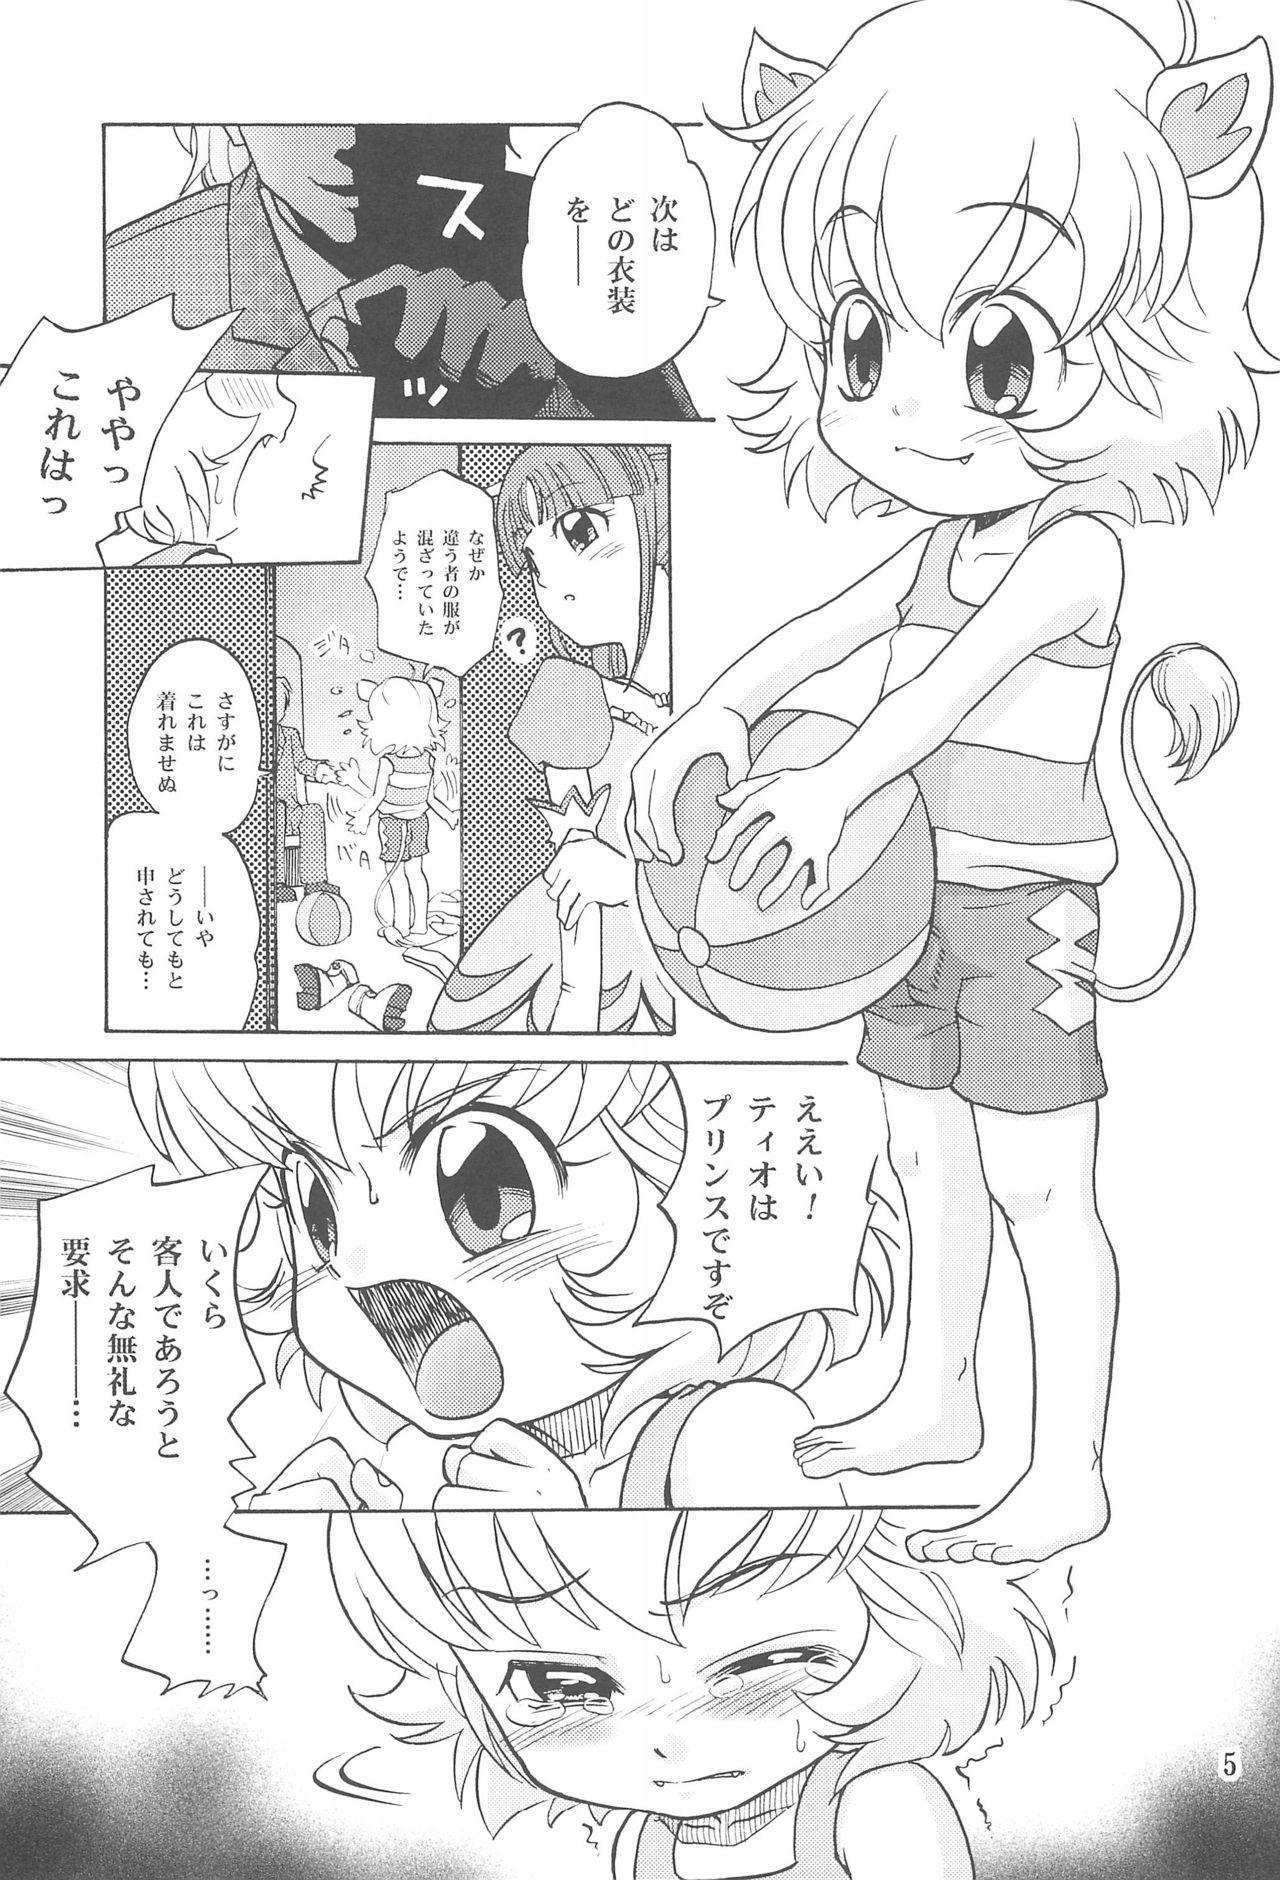 Tugging Hadaka no Oujisama - Fushigiboshi no futagohime | twin princesses of the wonder planet Doll - Page 7